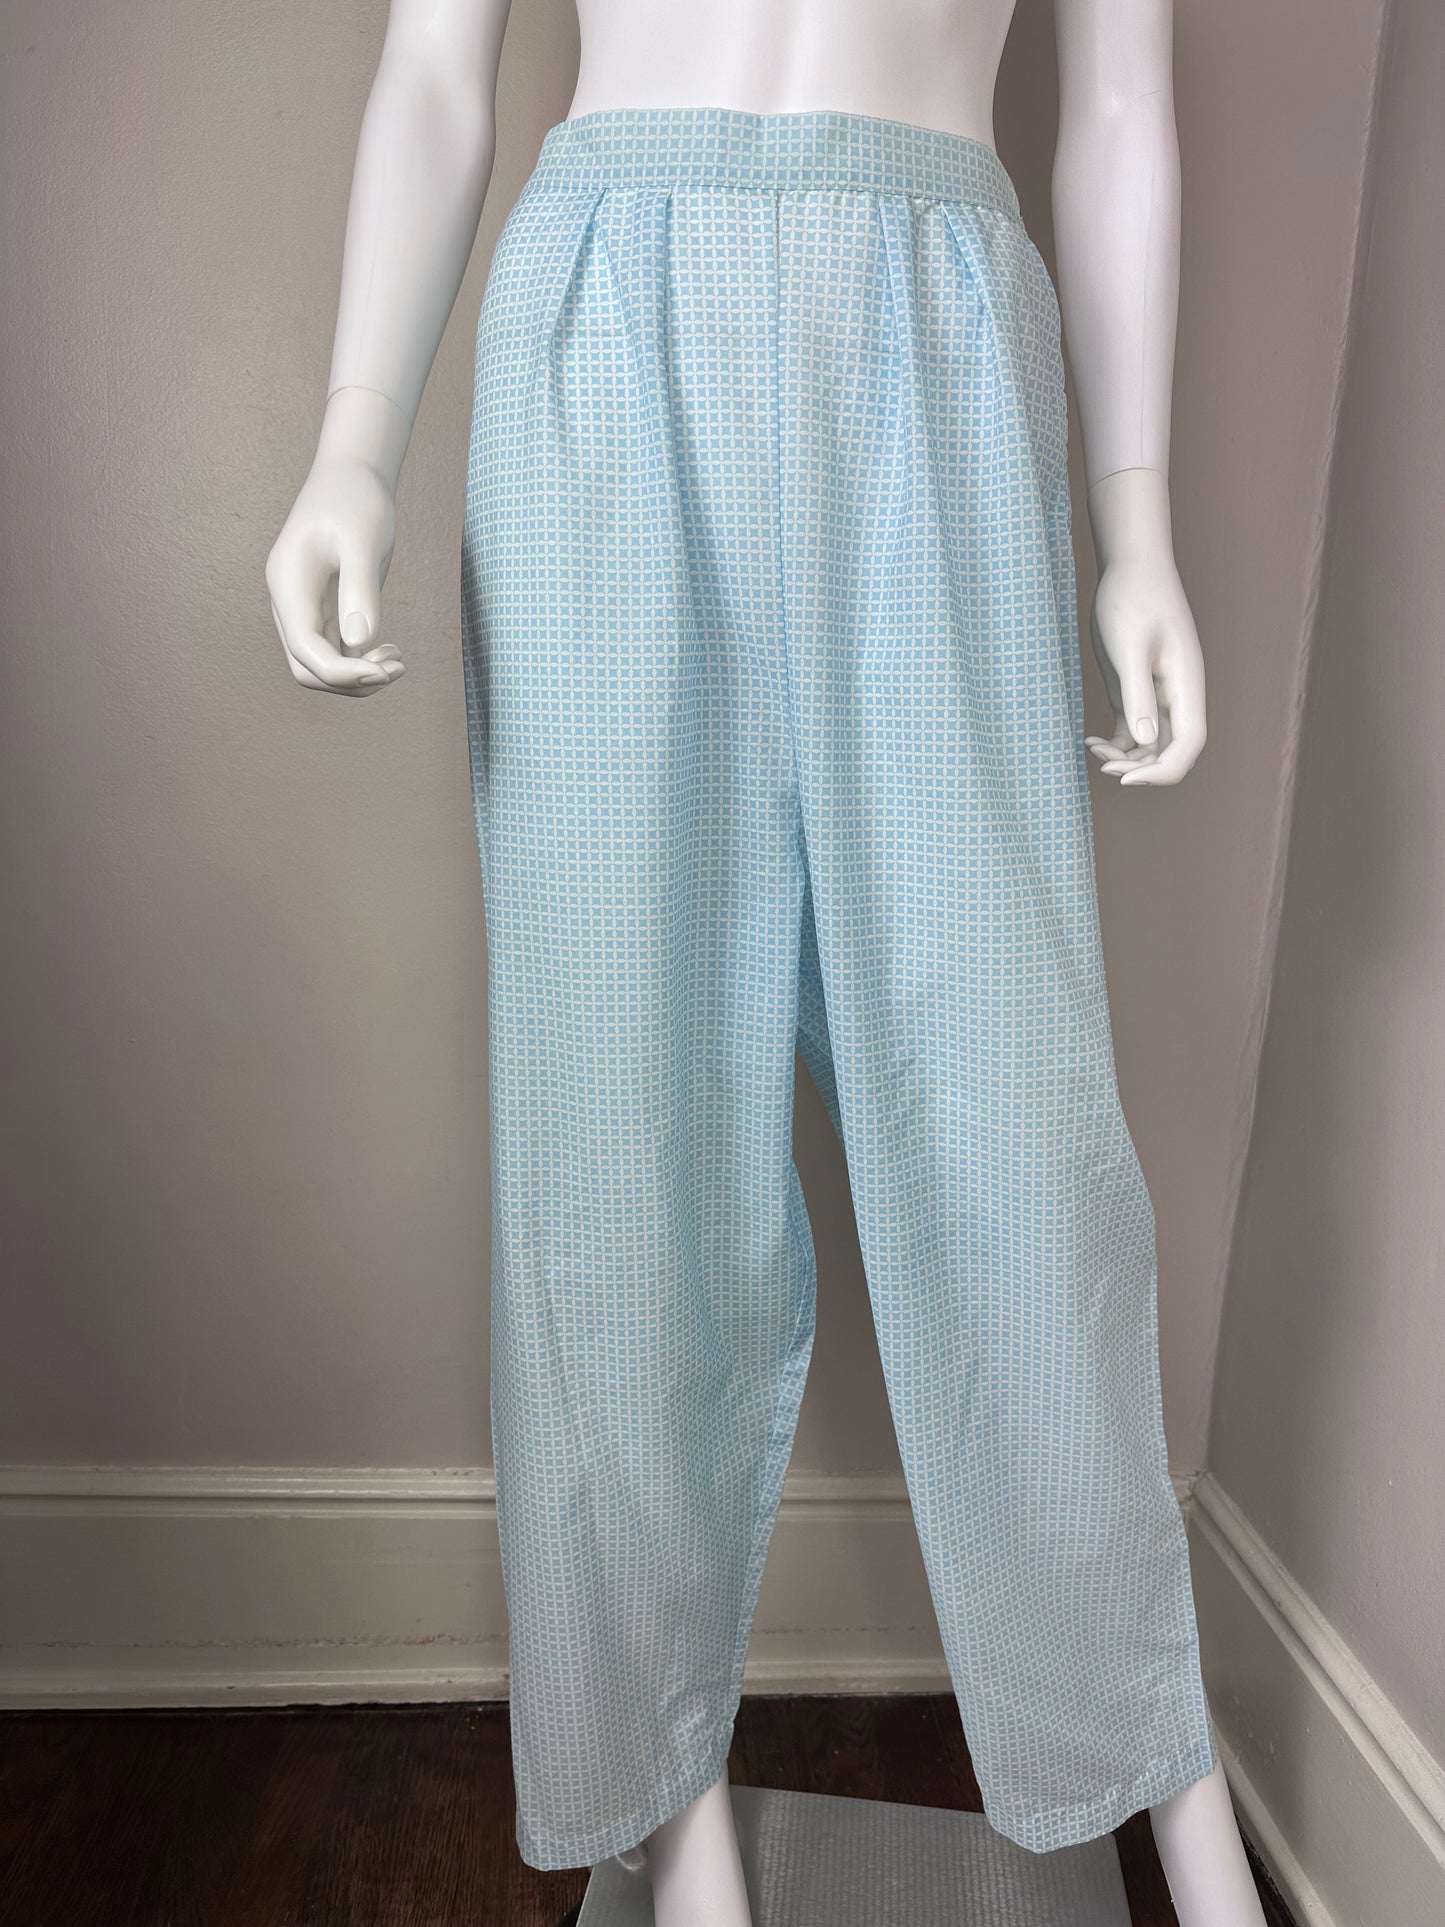 1960s Barbizon Little Mamie Pajamas, Size M/L, Blue Check with Floral Trim, Blendaire Batiste